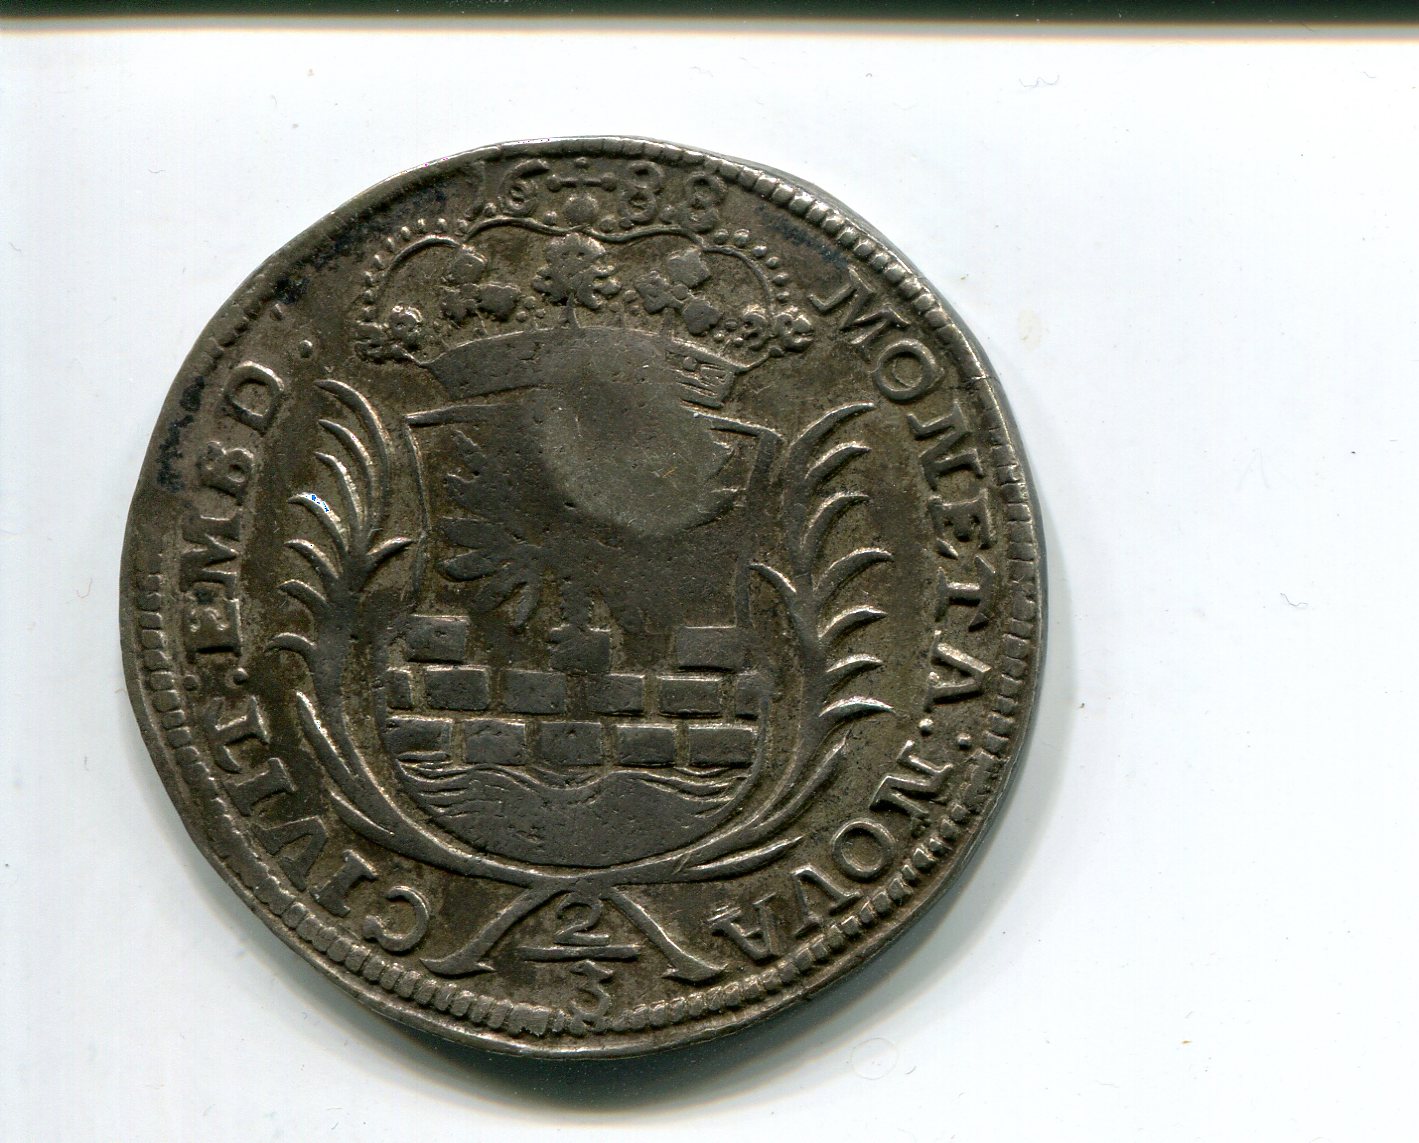 Koln coln cm on Emden Gulden 1688 obv 207.jpg